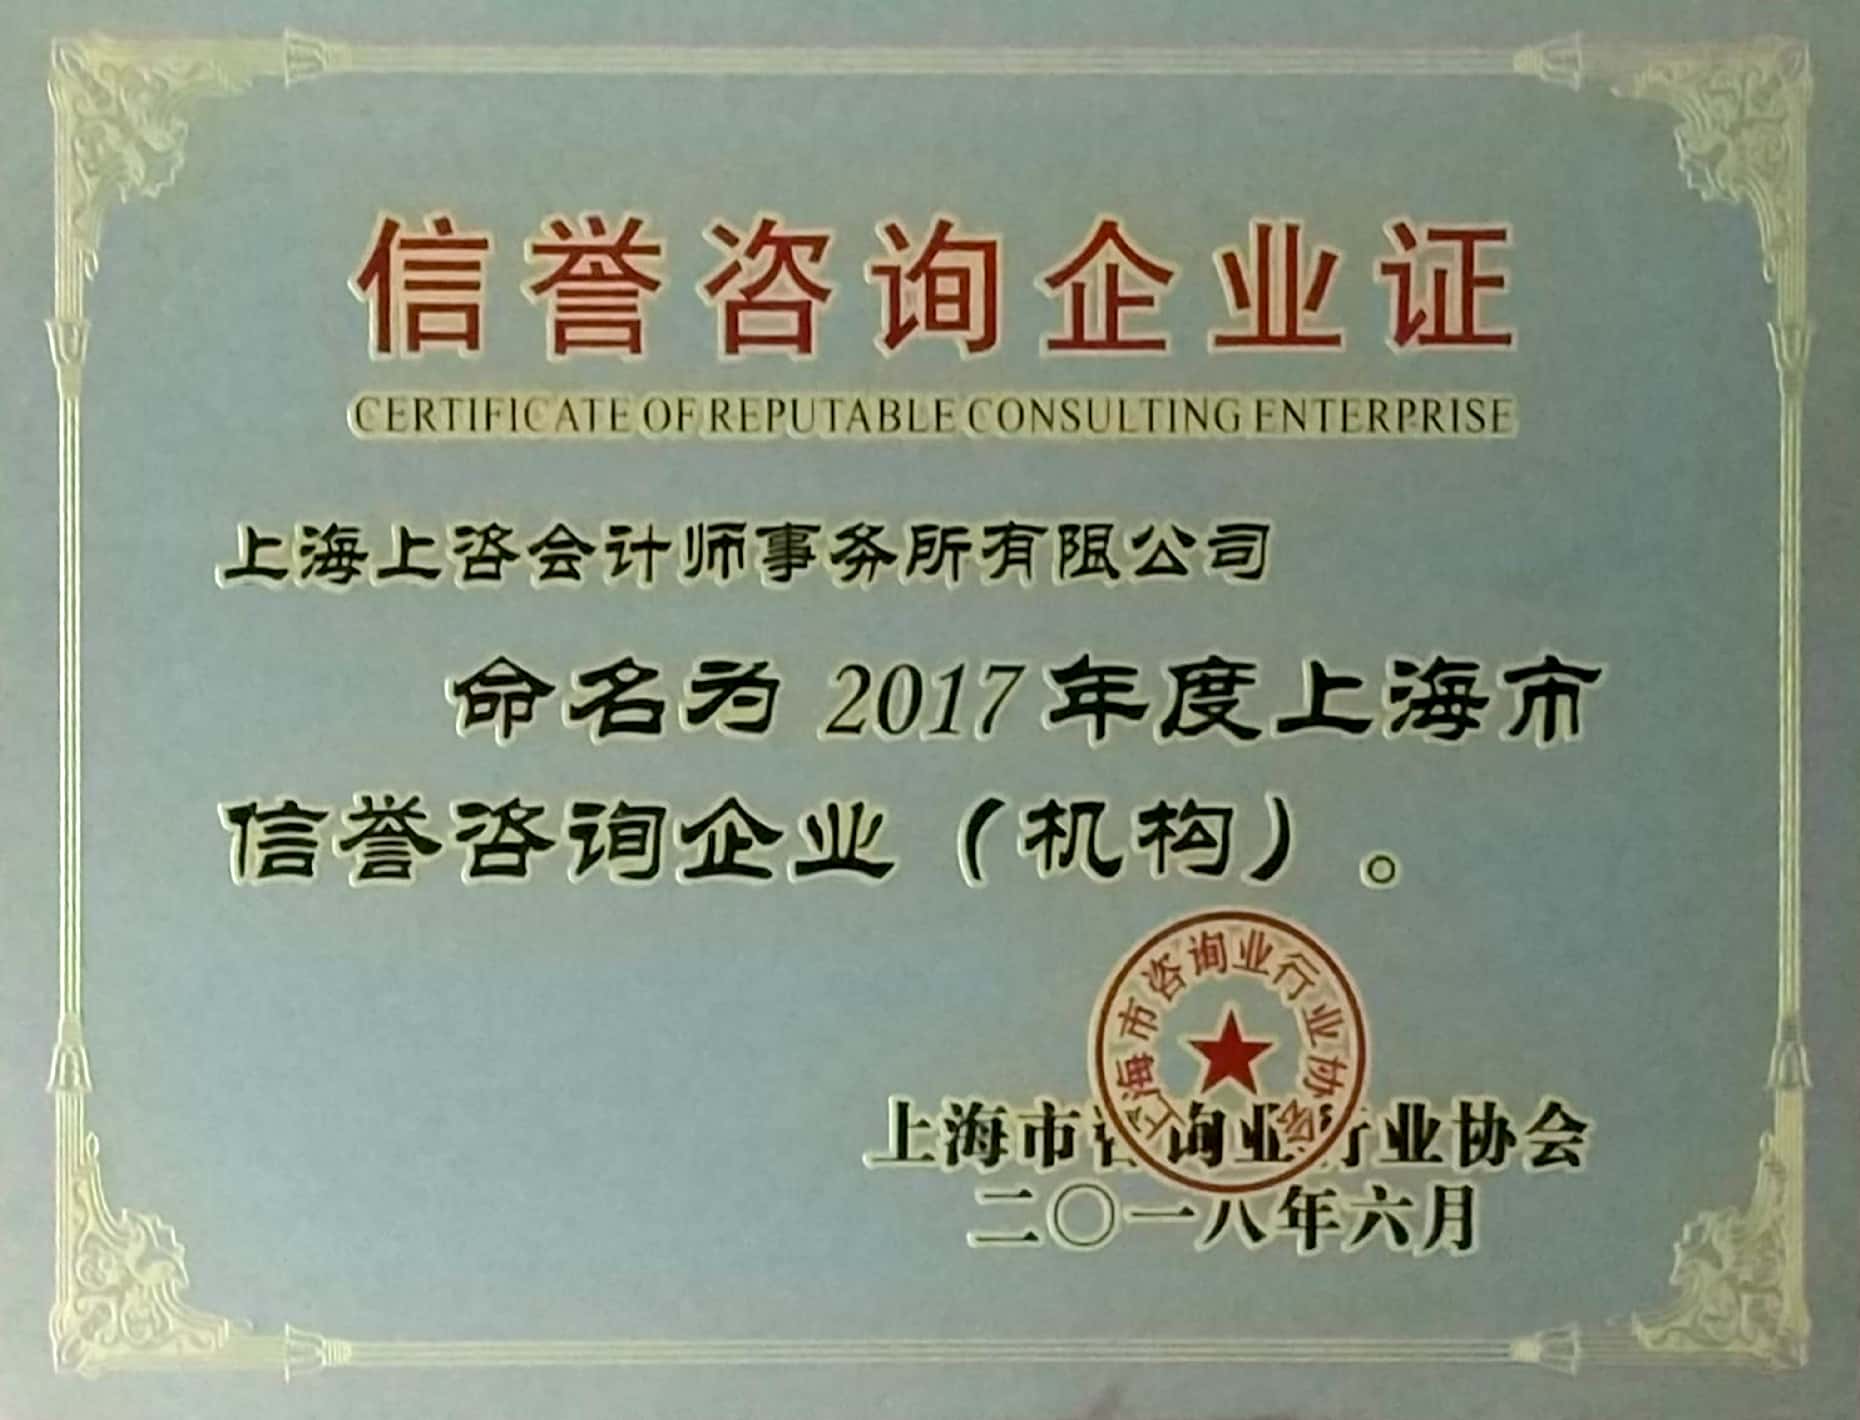 2017年度上海市信誉荣誉咨询企业